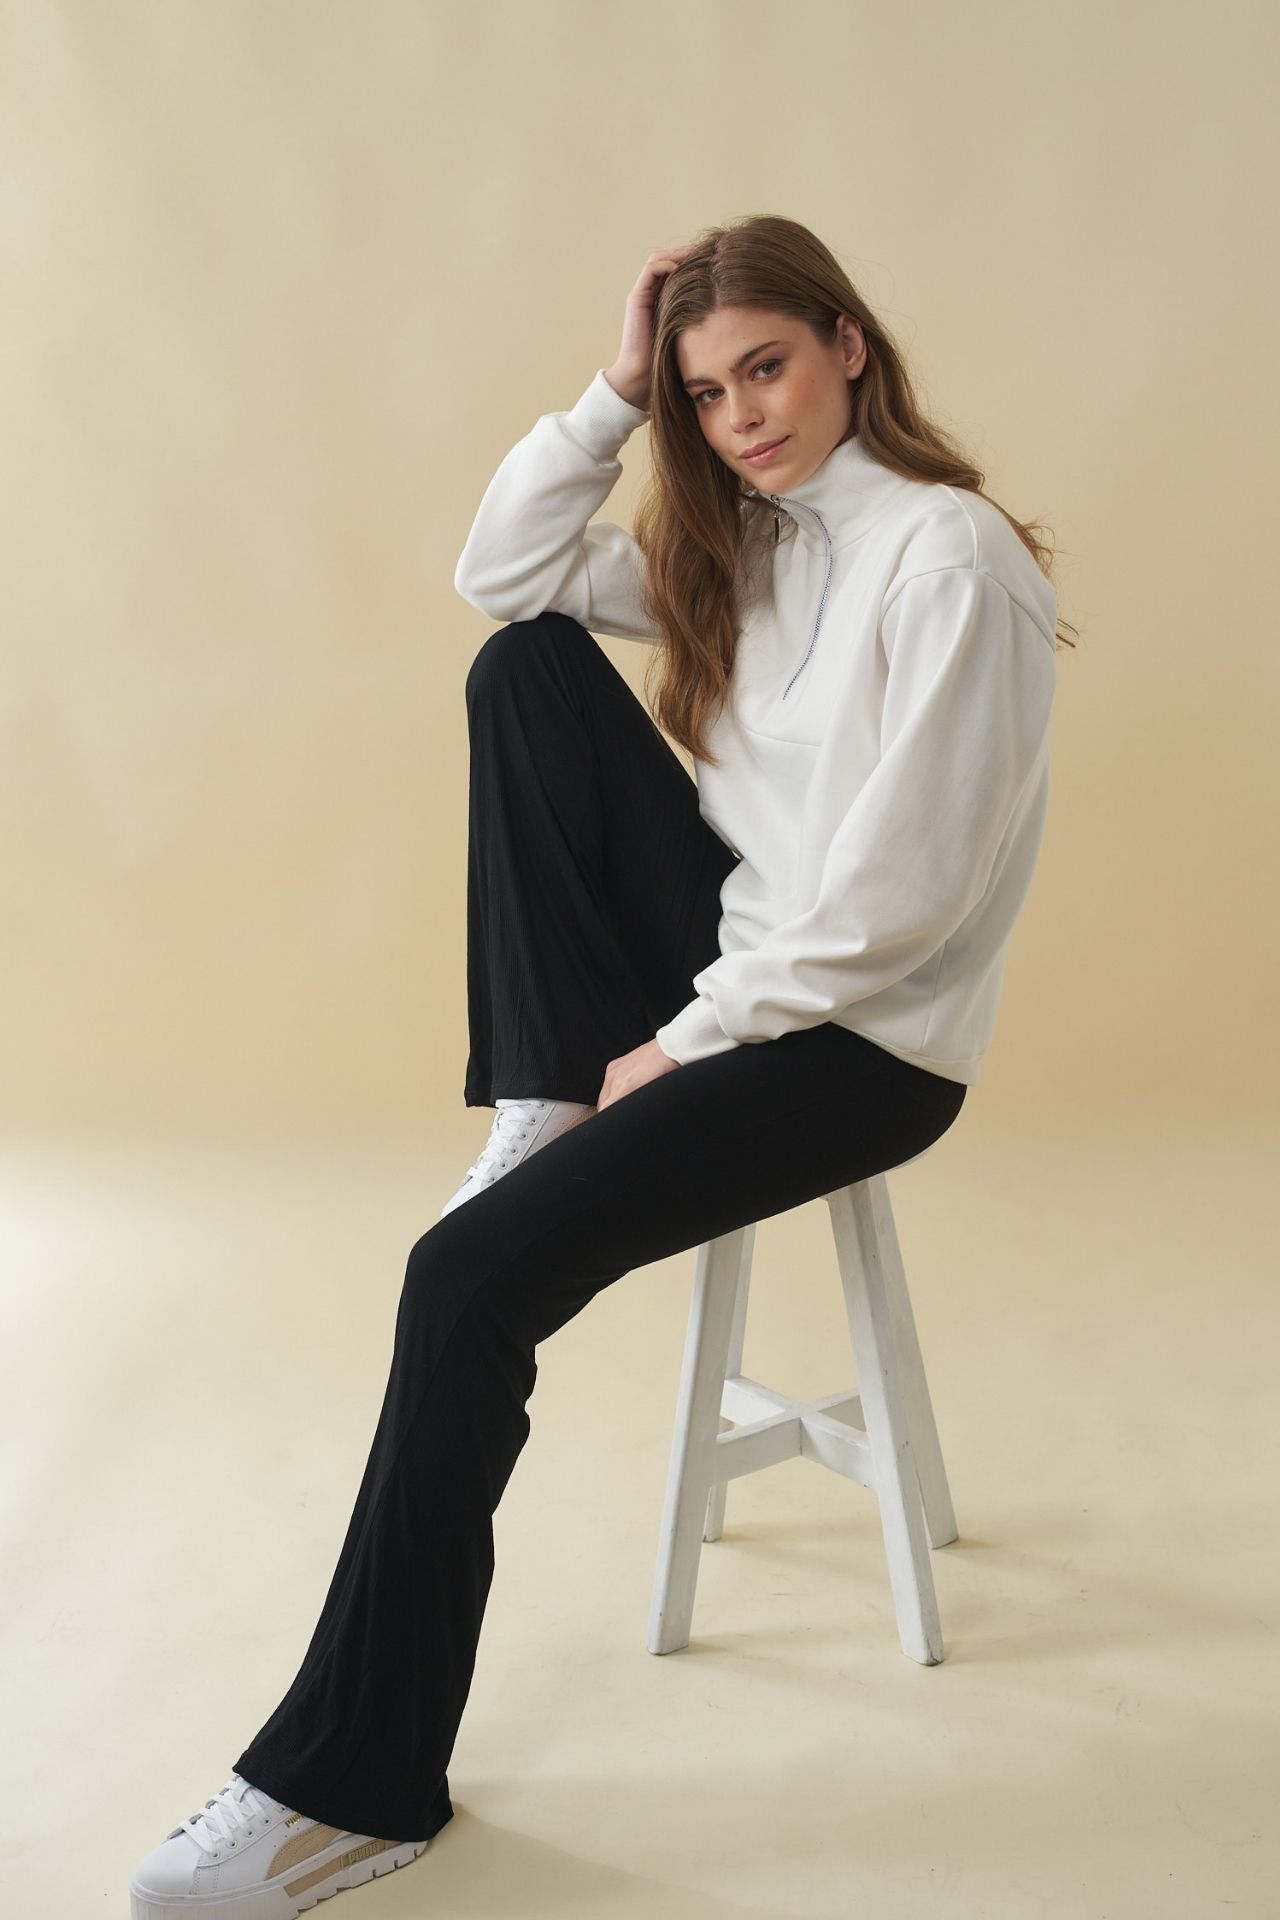 Sweatshirt de algodón 

S: busto 90 cm, cintura 90 cm, largo 63 cm

M: busto 93 cm, cintura 93 cm, largo 65 cm
